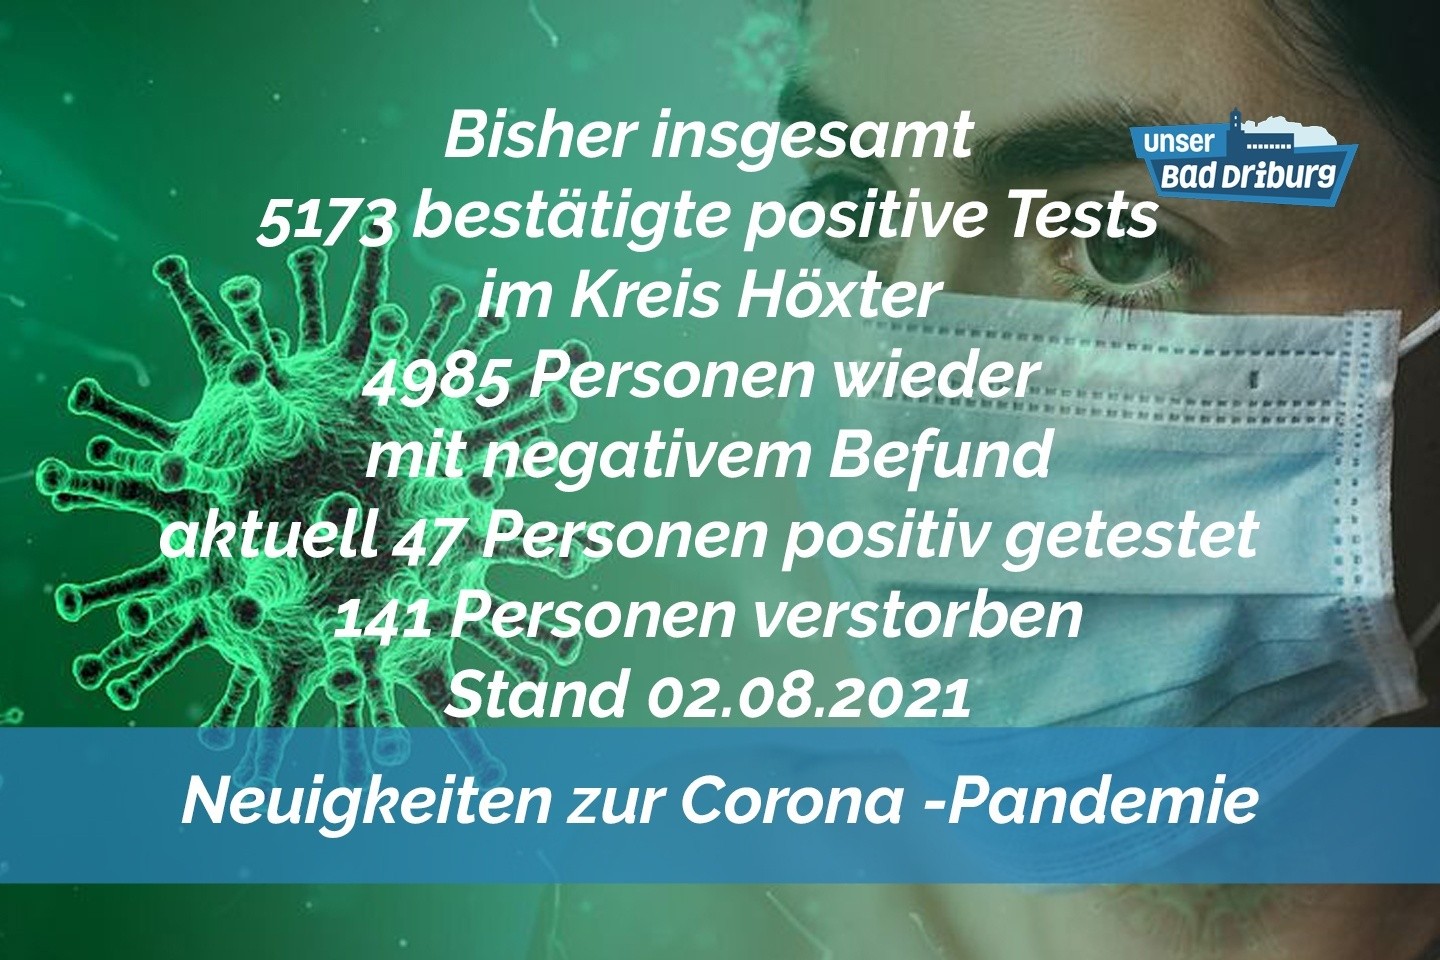 Update 02. August: 1 weiterer amtlich positiver Test im Kreis Höxter